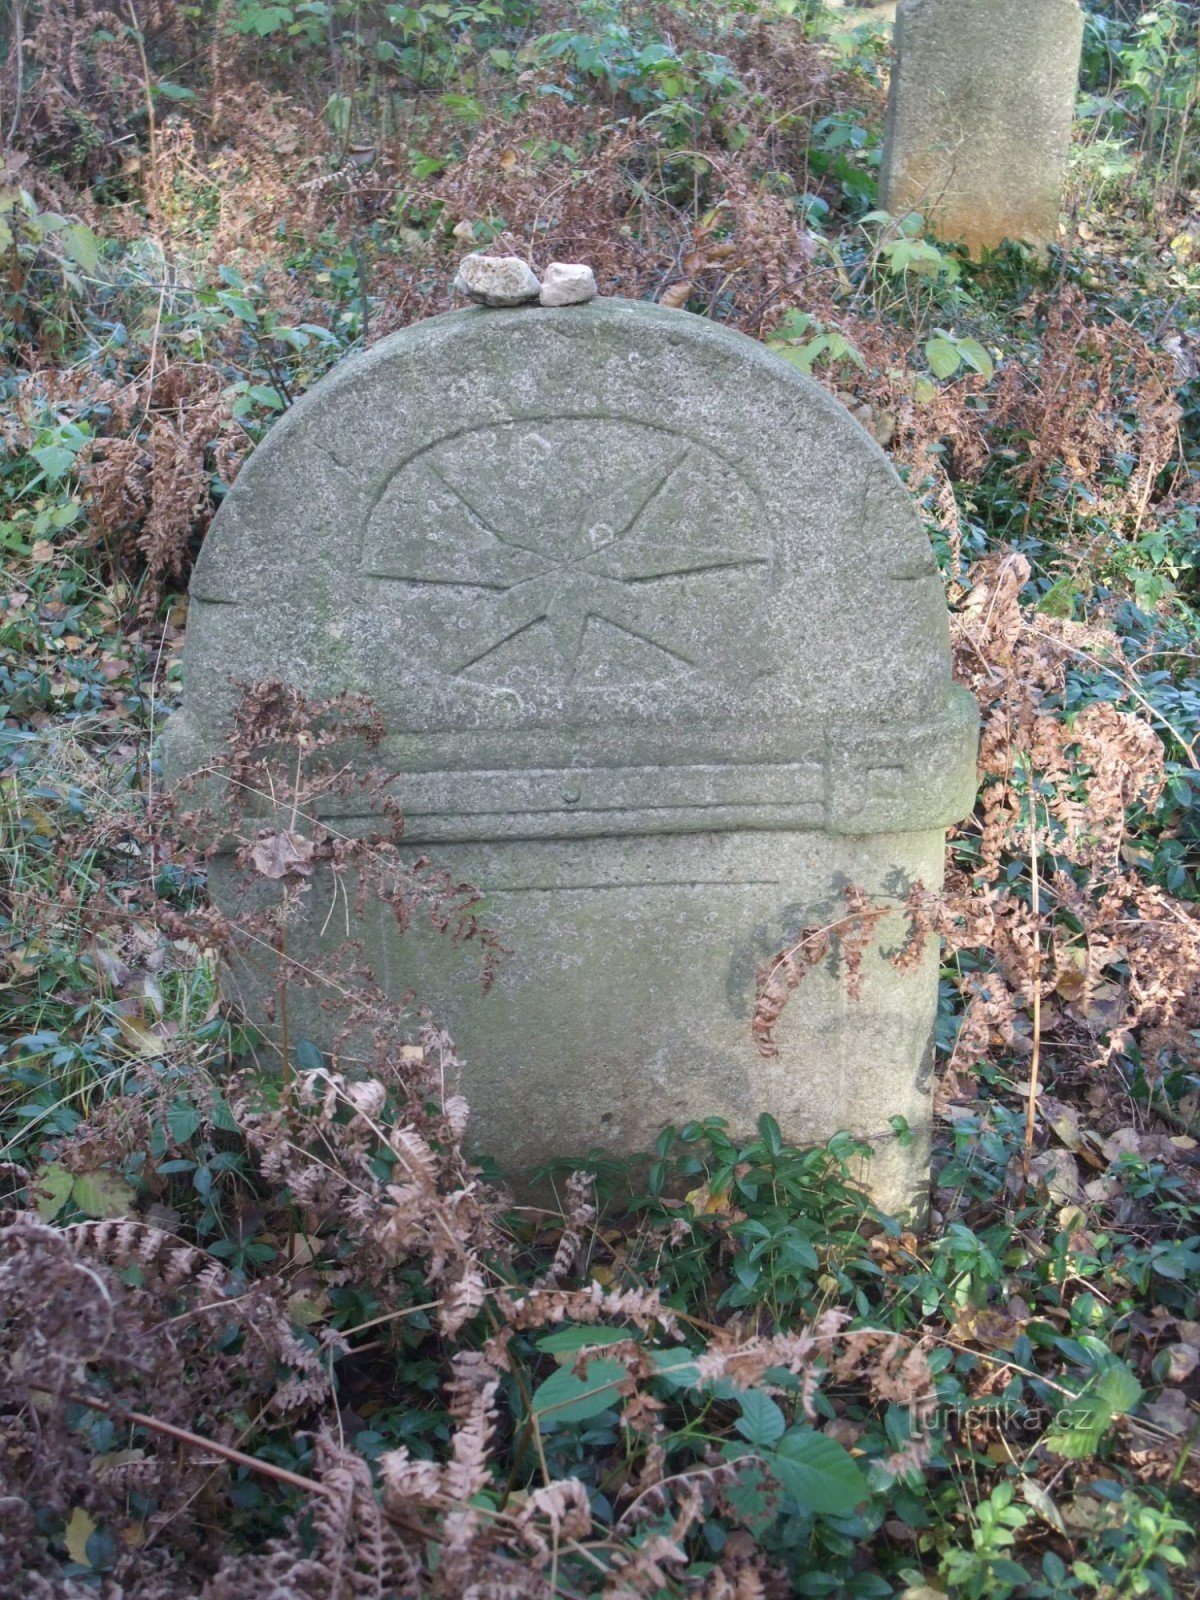 Judisk kyrkogård i Lomnička